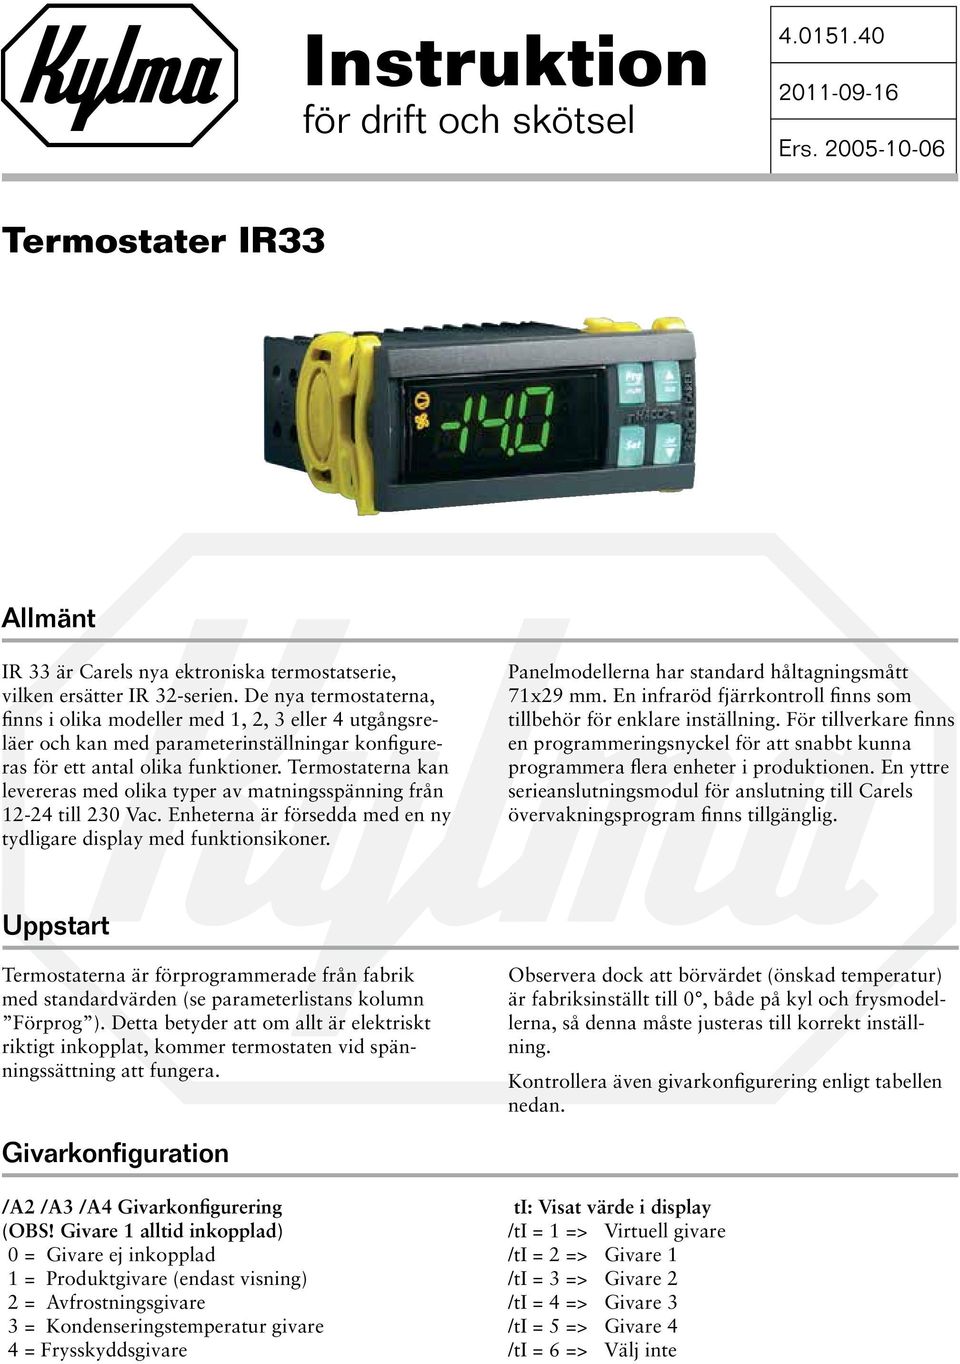 Termostaterna kan levereras med olika typer av matningsspänning från 12-24 till 230 Vac. Enheterna är försedda med en ny tydligare display med funktionsikoner.